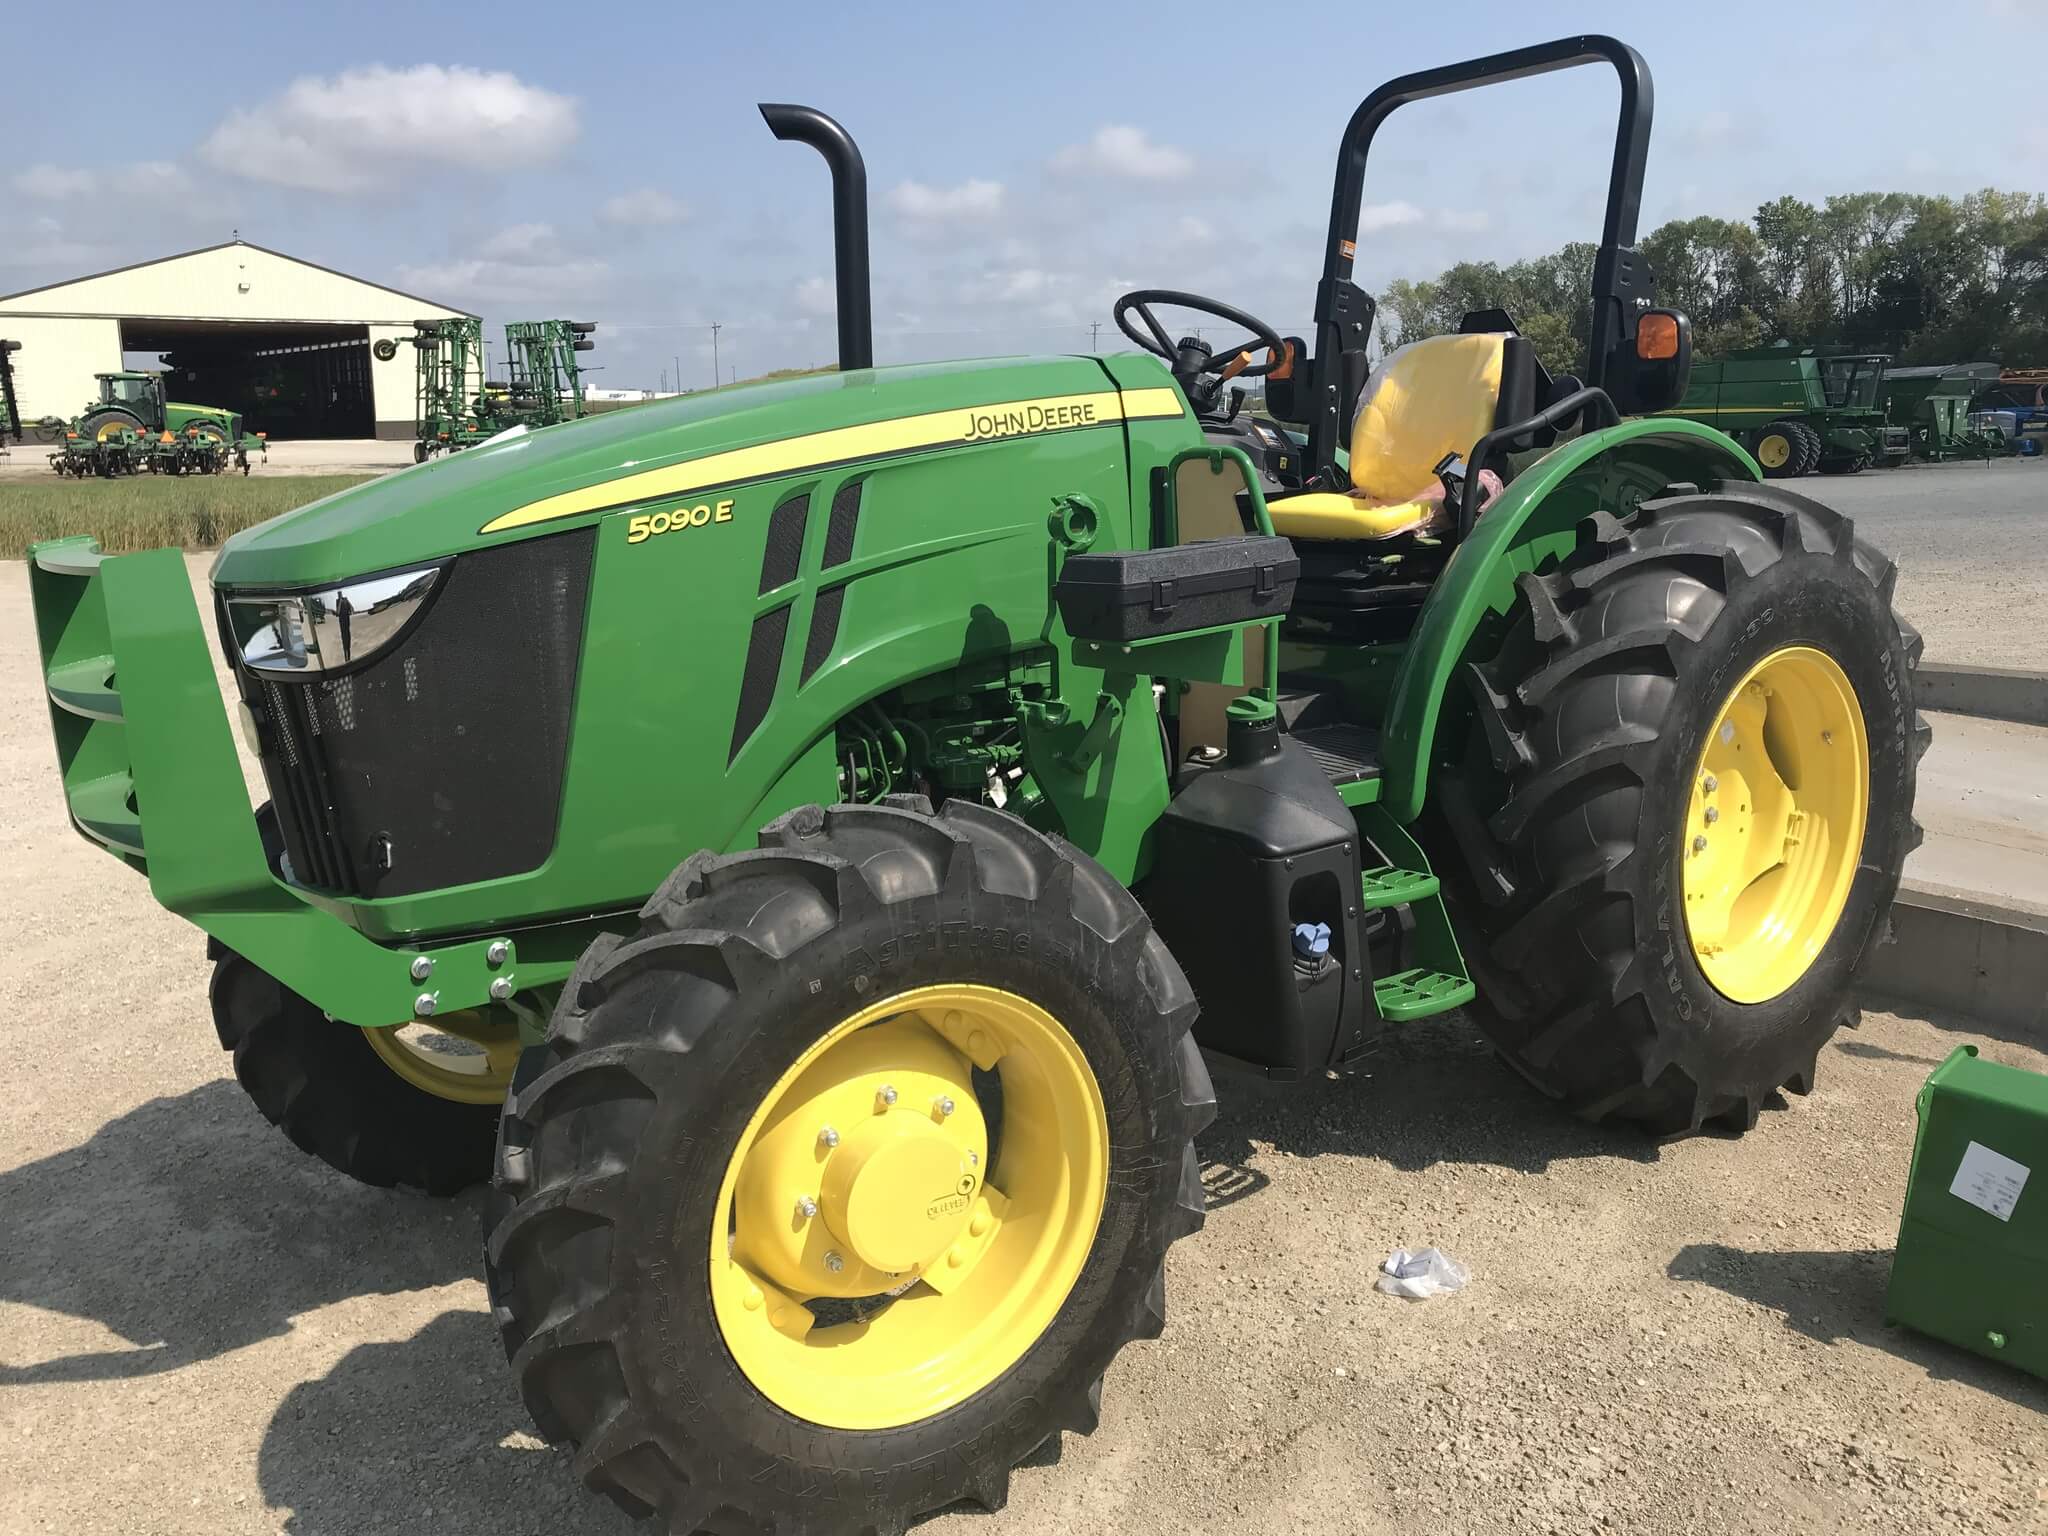 5090E Tractor